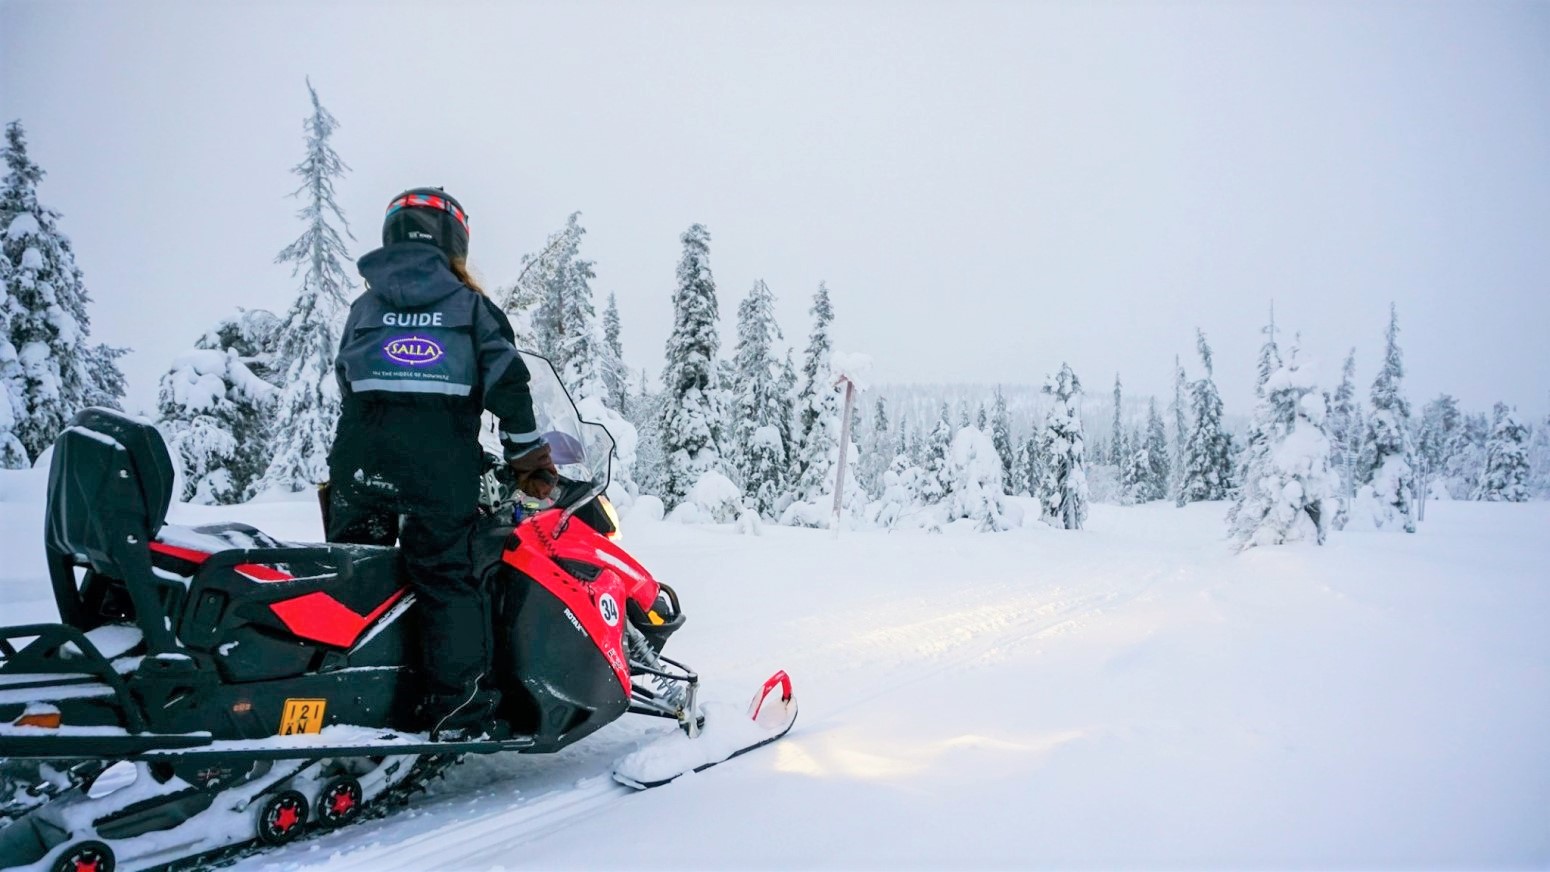 salla navidad safari en motos de nieve